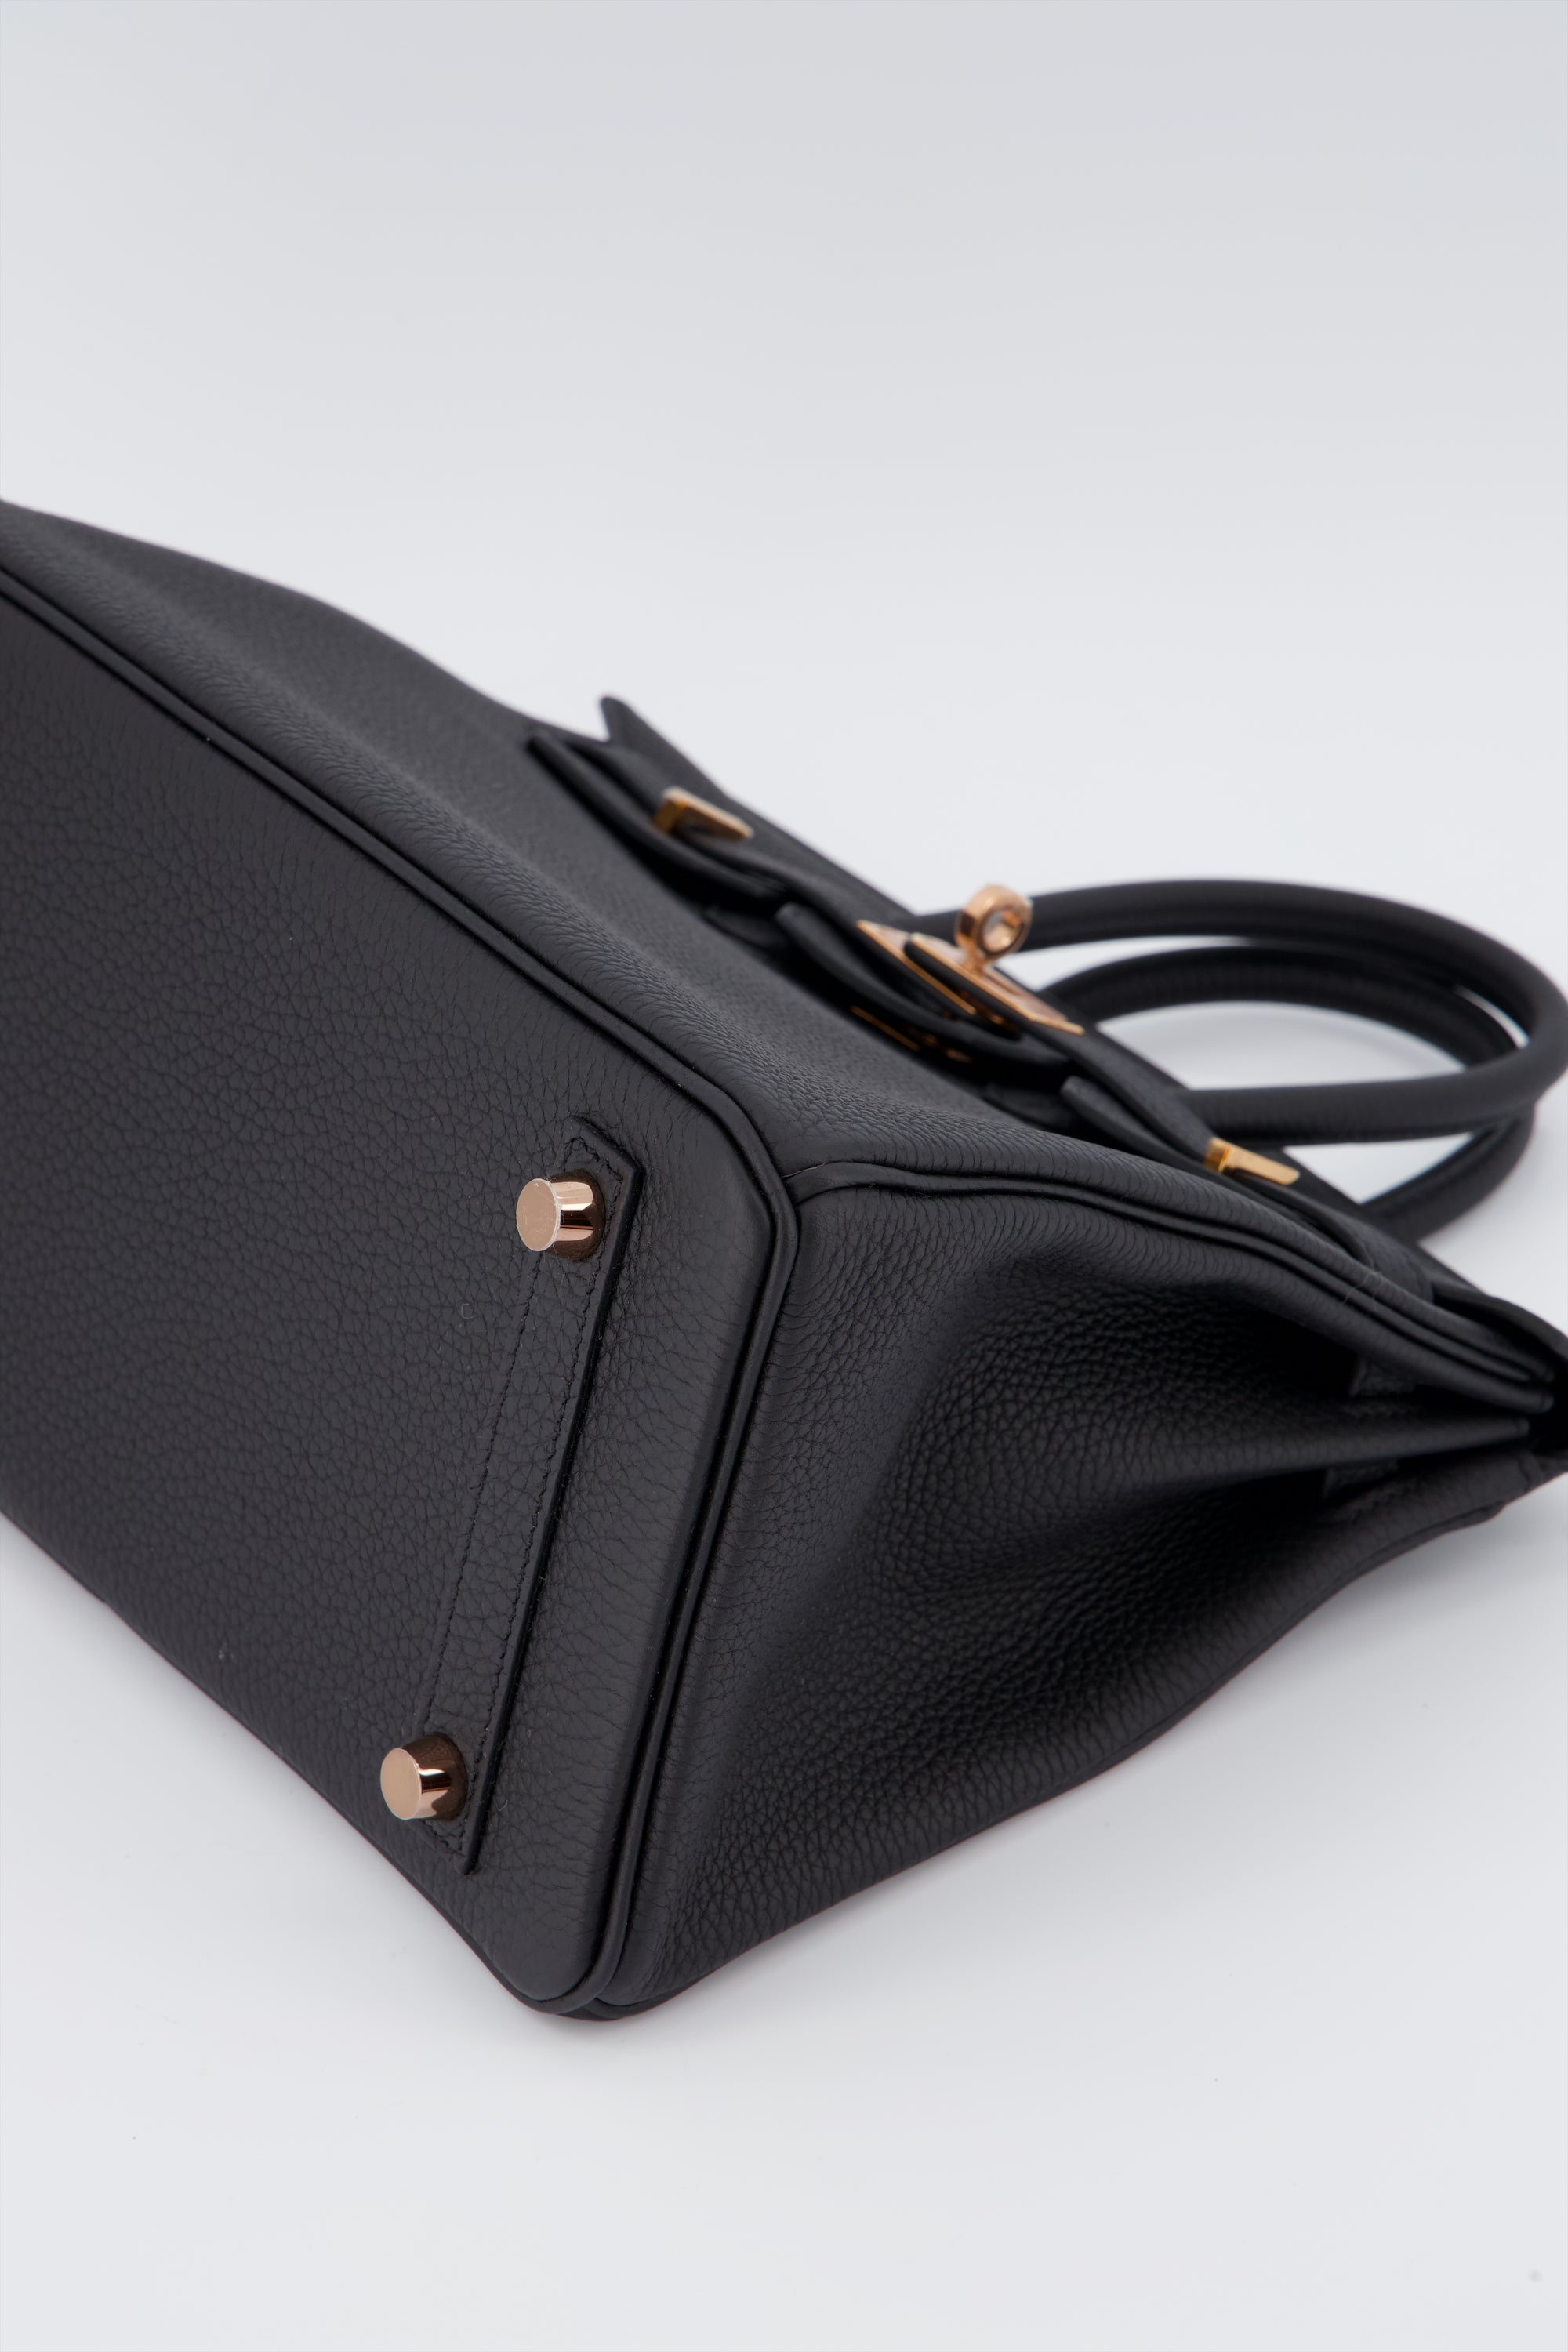 Hermes Birkin 25 Black Handbag Togo Leather With Rose Gold Hardware